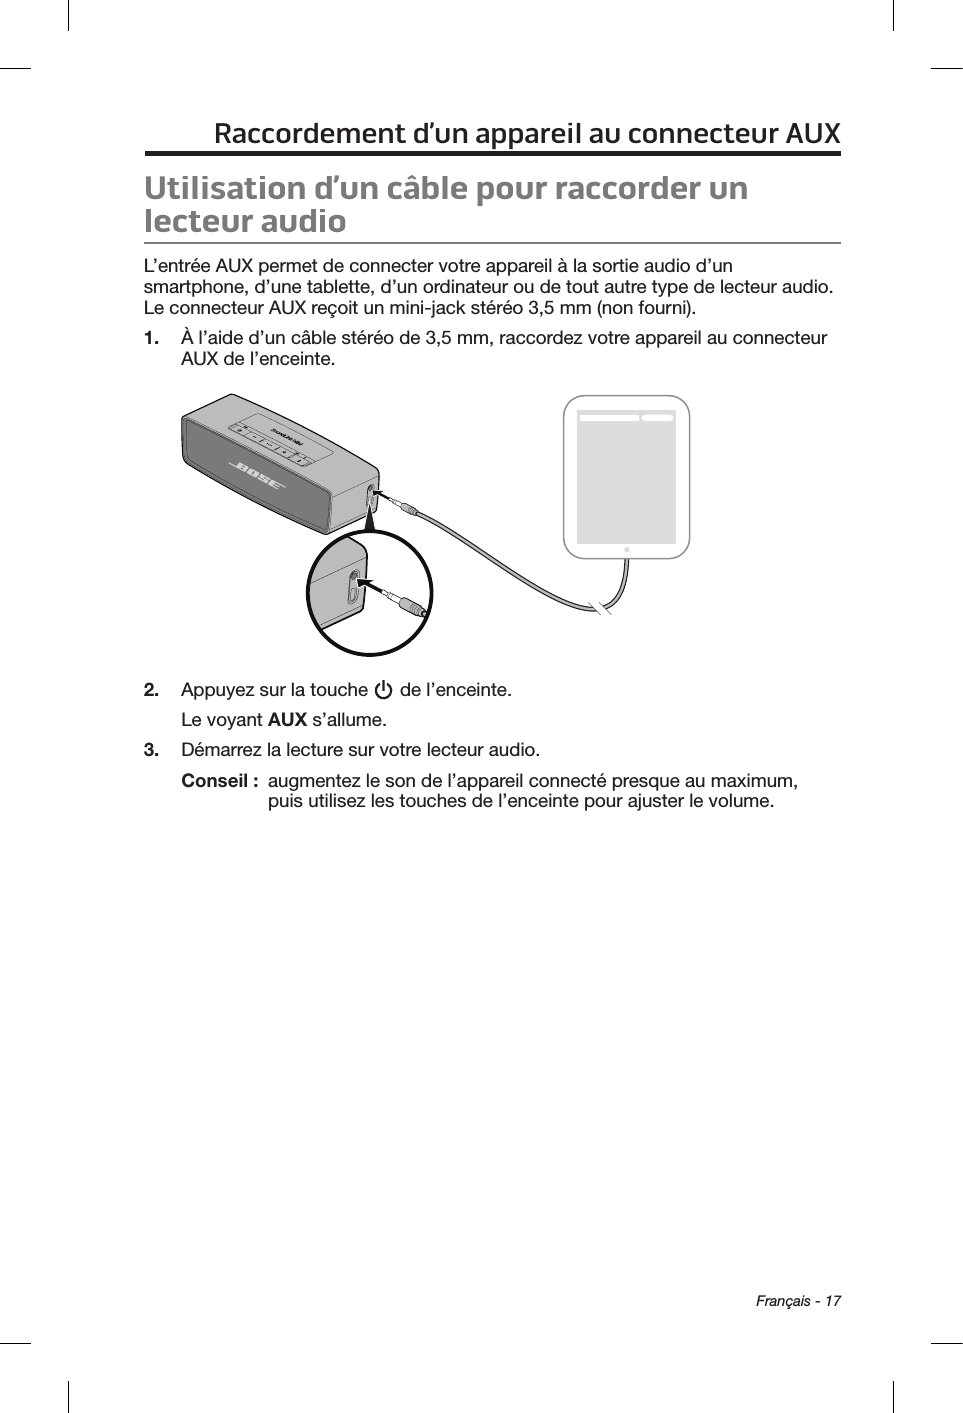  Français - 17Raccordement d’un appareil au connecteur AUXUtilisation d’un câble pour raccorder un lecteur audioL’entrée AUX permet de connecter votre appareil à la sortie audio d’un smartphone, d’une tablette, d’un ordinateur ou de tout autre type de lecteur audio. Le connecteur AUX reçoit un mini-jack stéréo 3,5 mm (non fourni).1.  À l’aide d’un câble stéréo de 3,5 mm, raccordez votre appareil au connecteur AUX de l’enceinte.2.  Appuyez sur la touche   de l’enceinte.Le voyant AUX s’allume.3.  Démarrez la lecture sur votre lecteur audio.Conseil :   augmentez le son de l’appareil connecté presque au maximum, puis utilisez les touches de l’enceinte pour ajuster le volume.